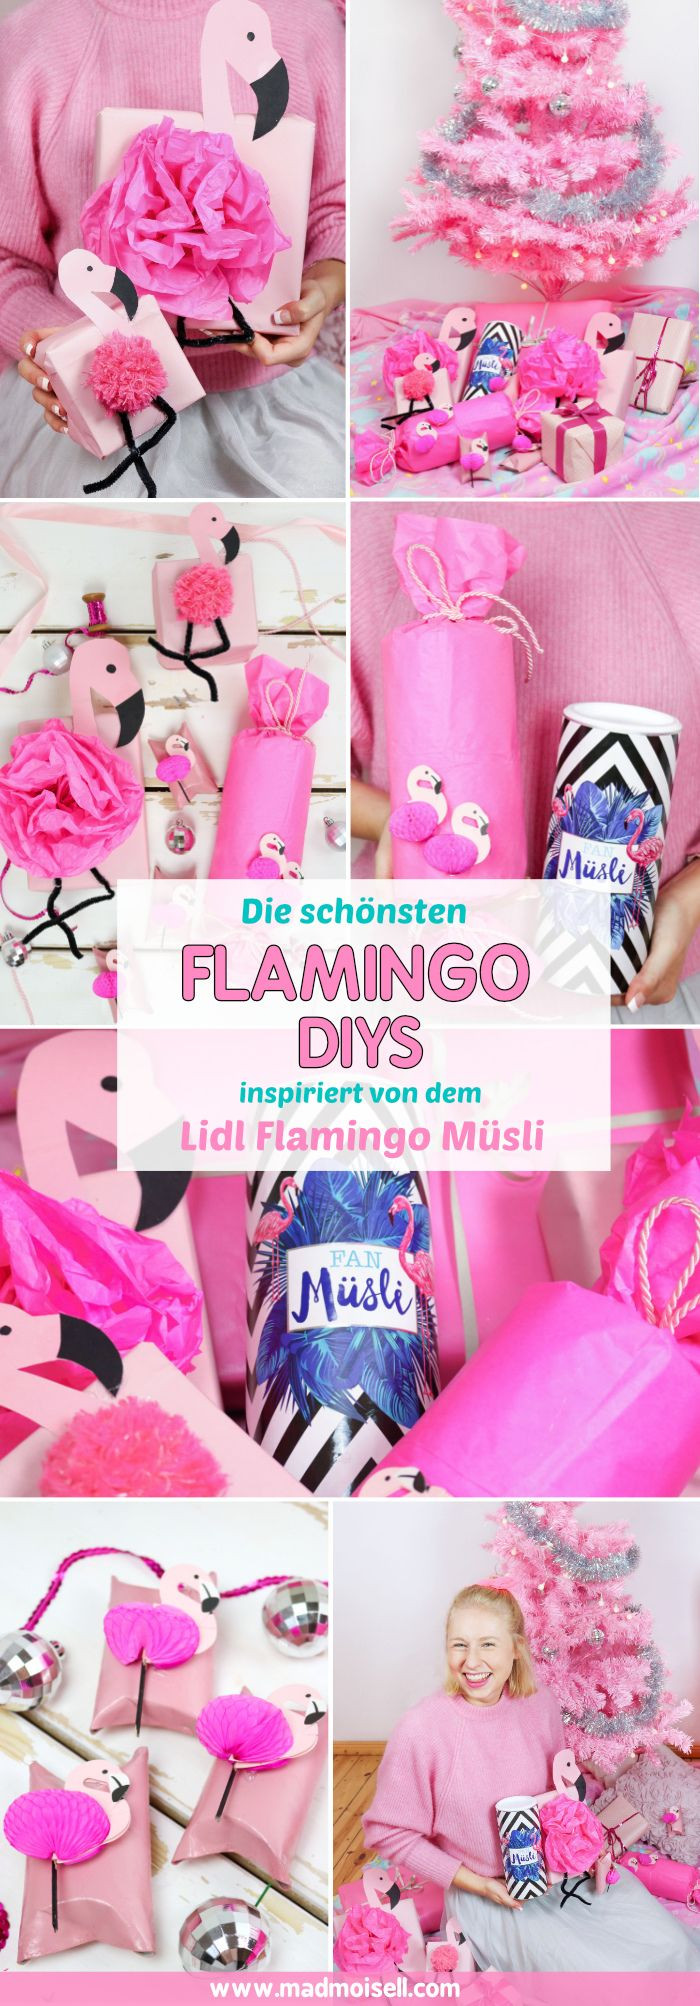 Flamingo Geschenke
 DIY Flamingo Geschenkverpackung basteln 3 kreative